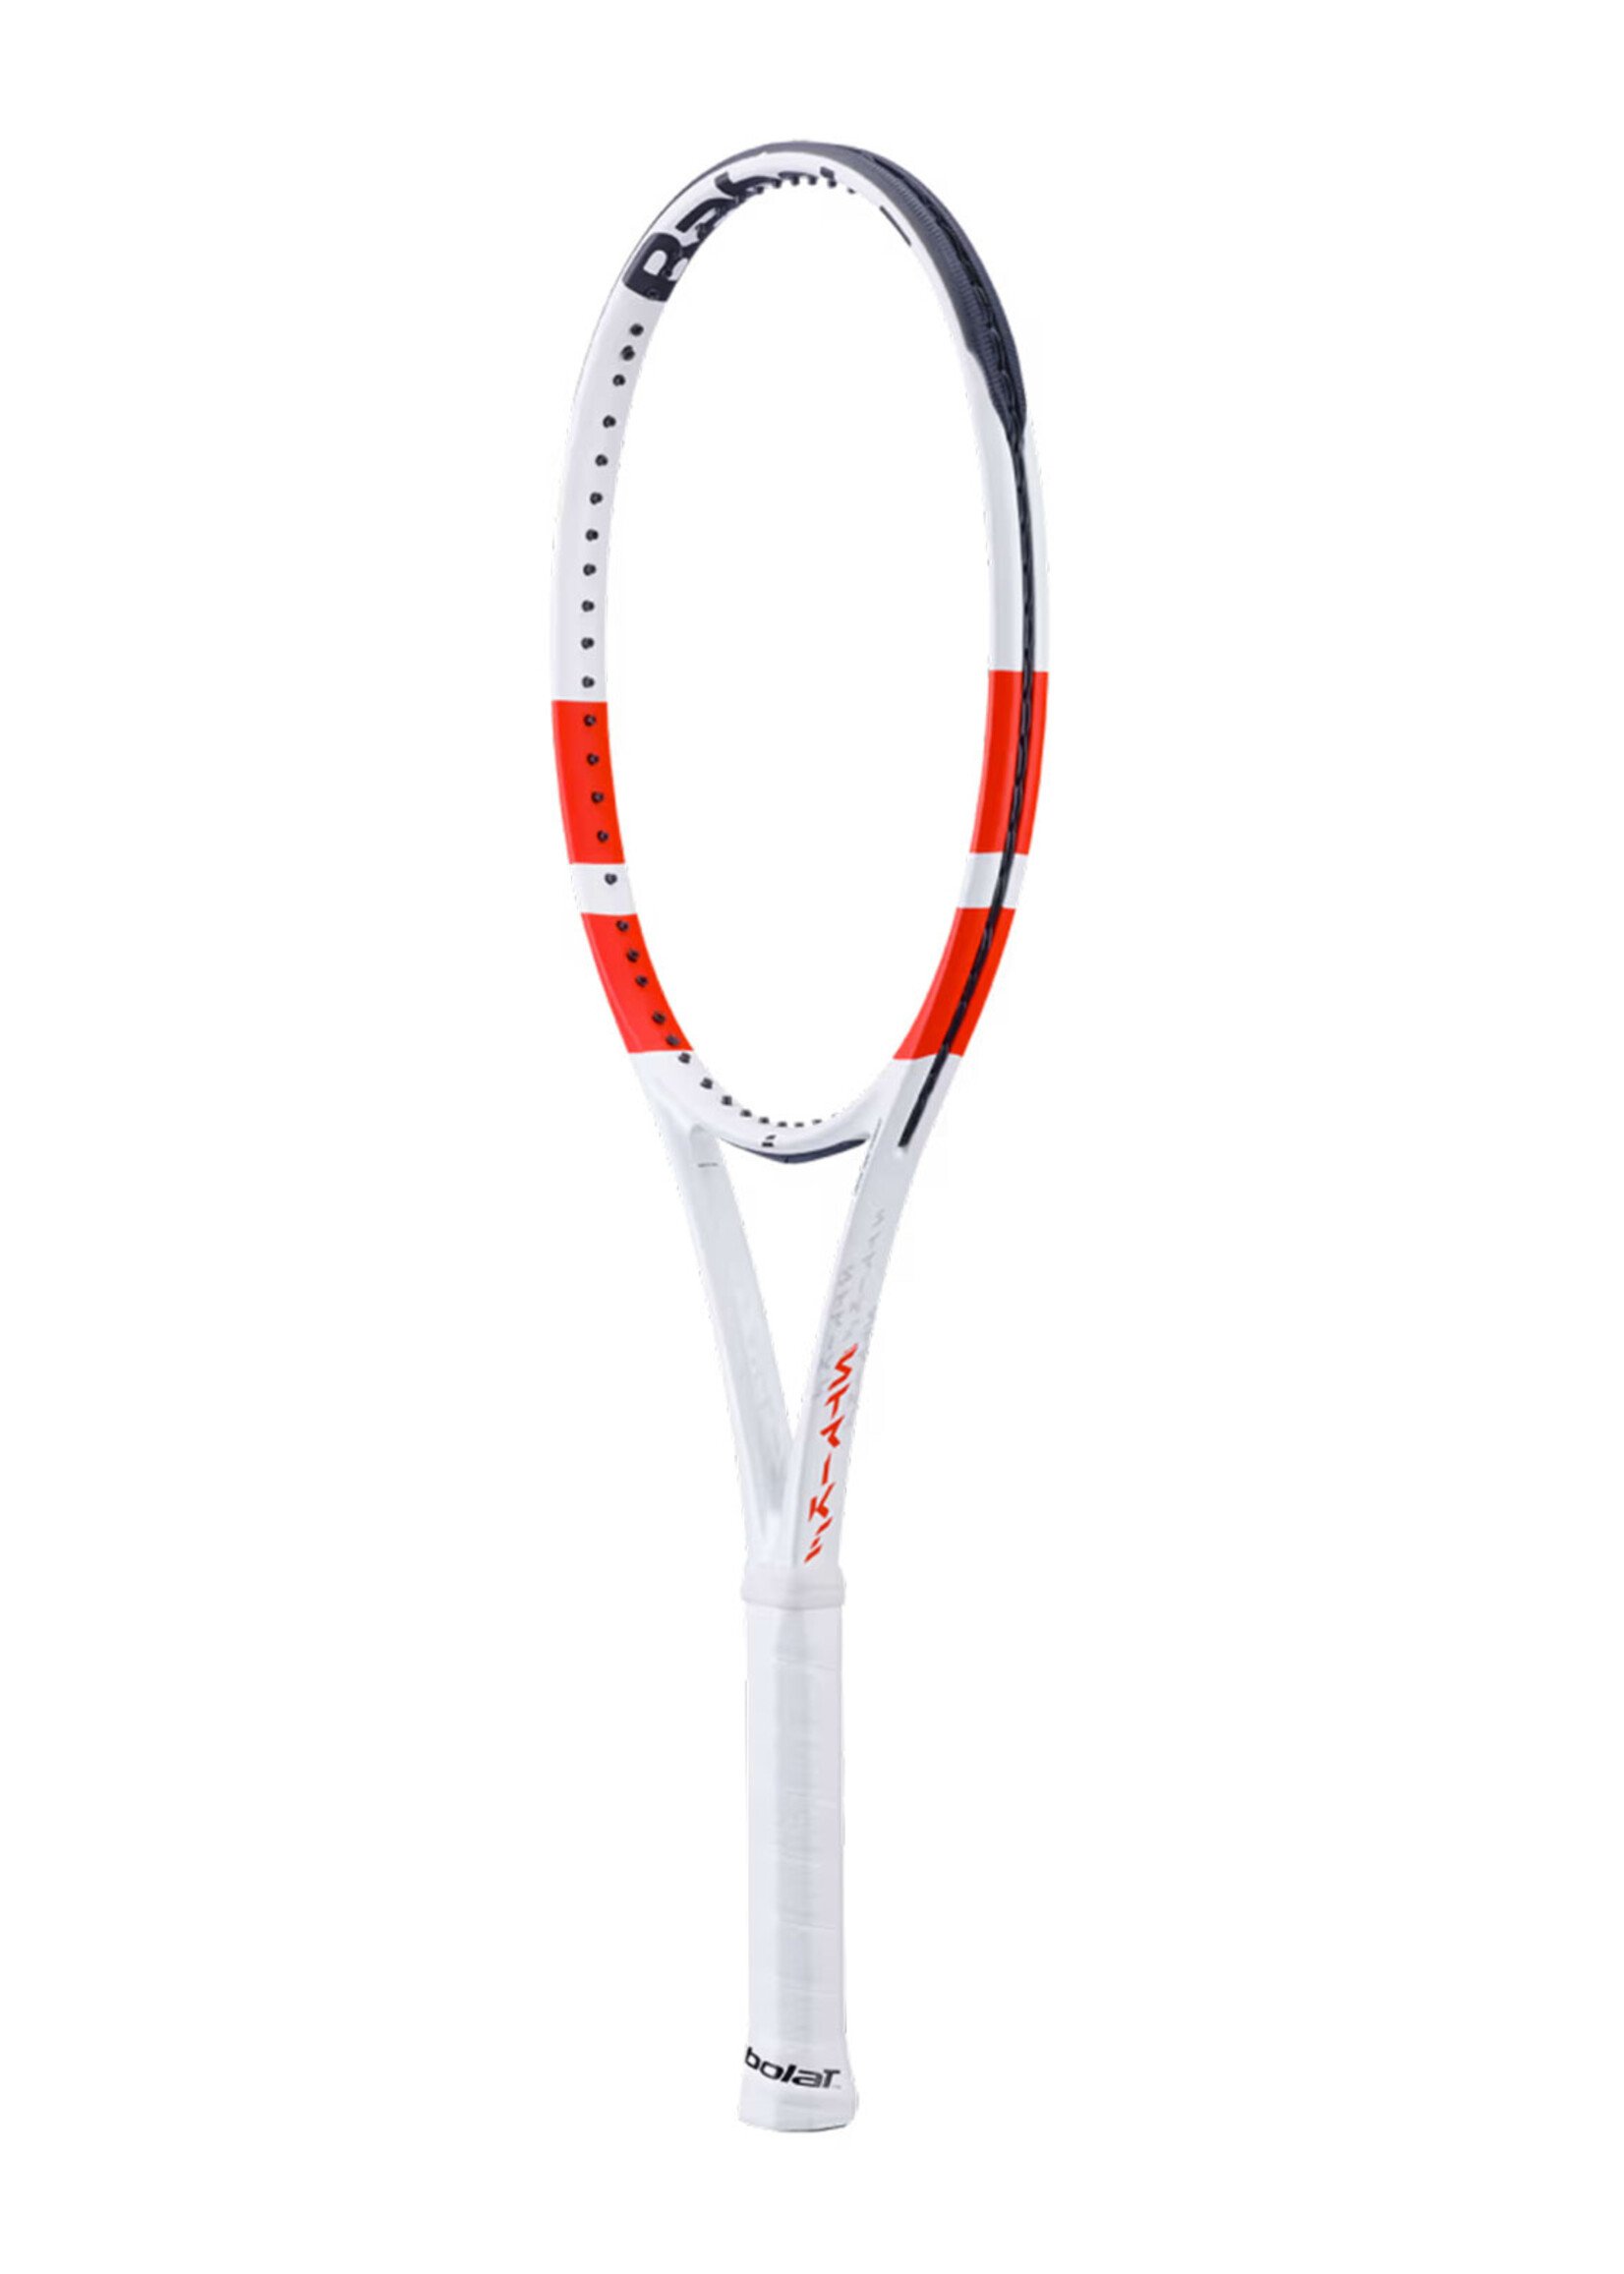 Babolat Babolat Pure Strike 100 (300g) Gen4 Tennis Racquet